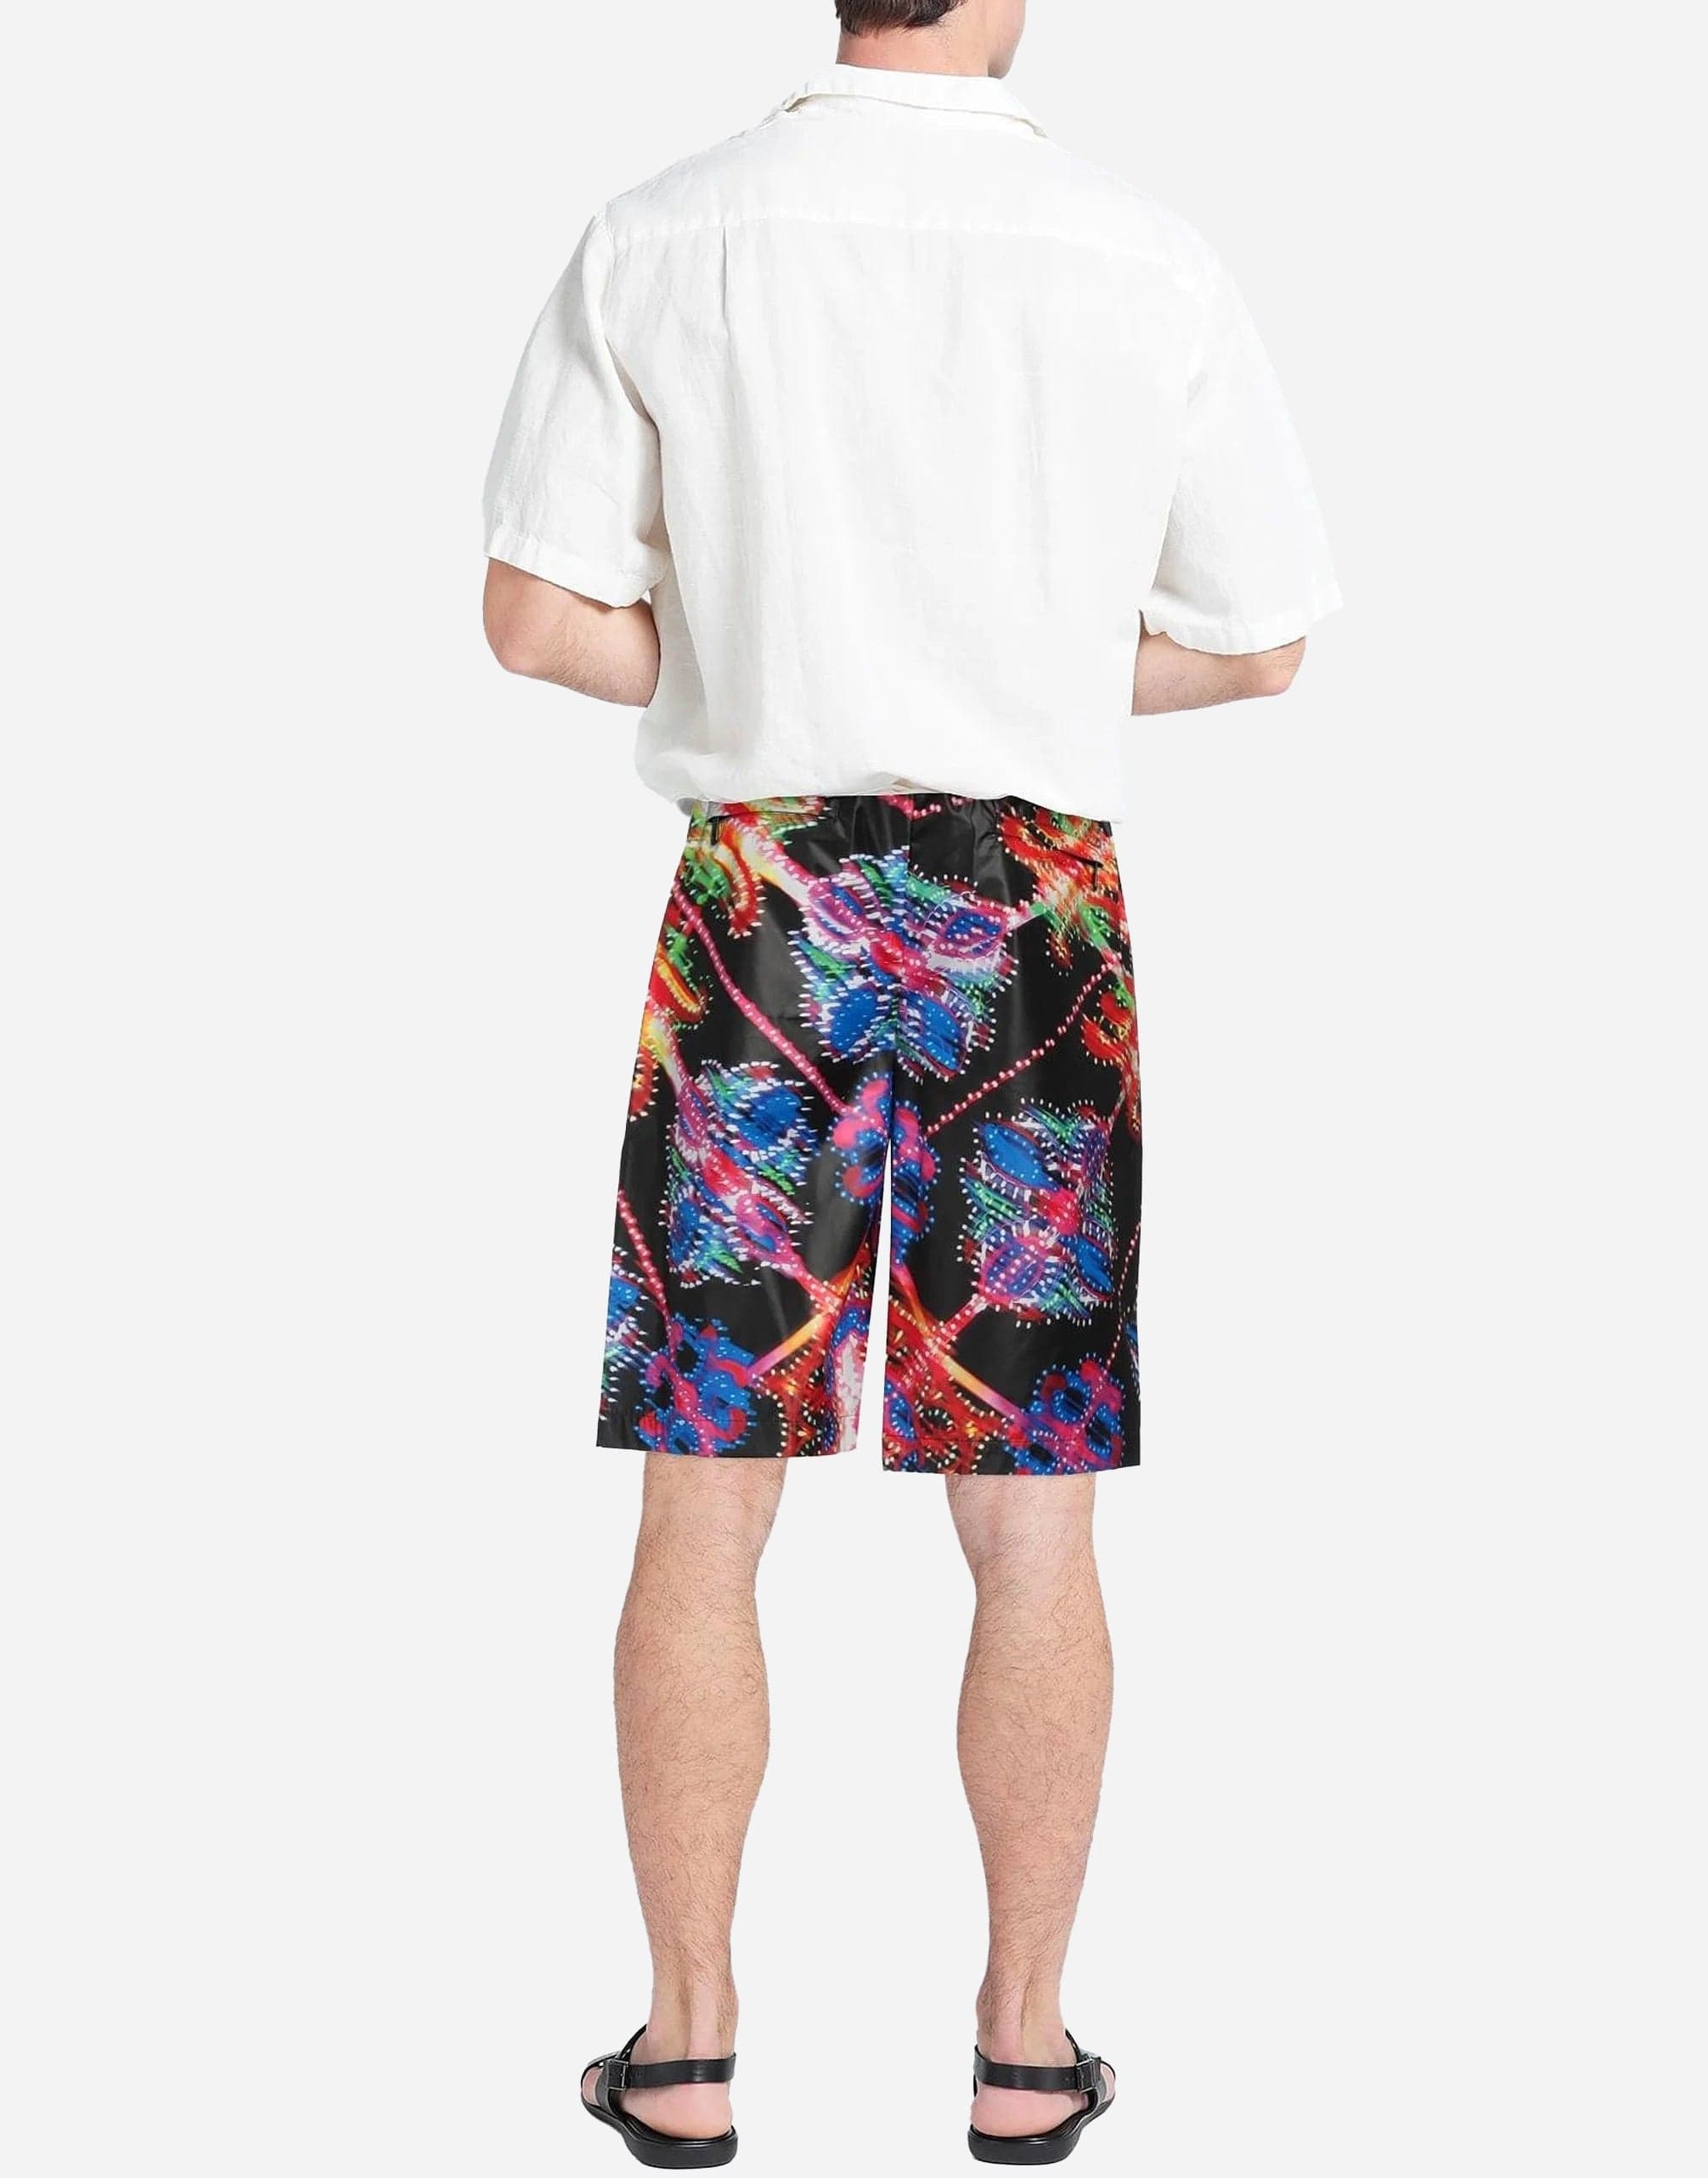 Dolce & Gabbana Luminarie Print Bermuda Shorts